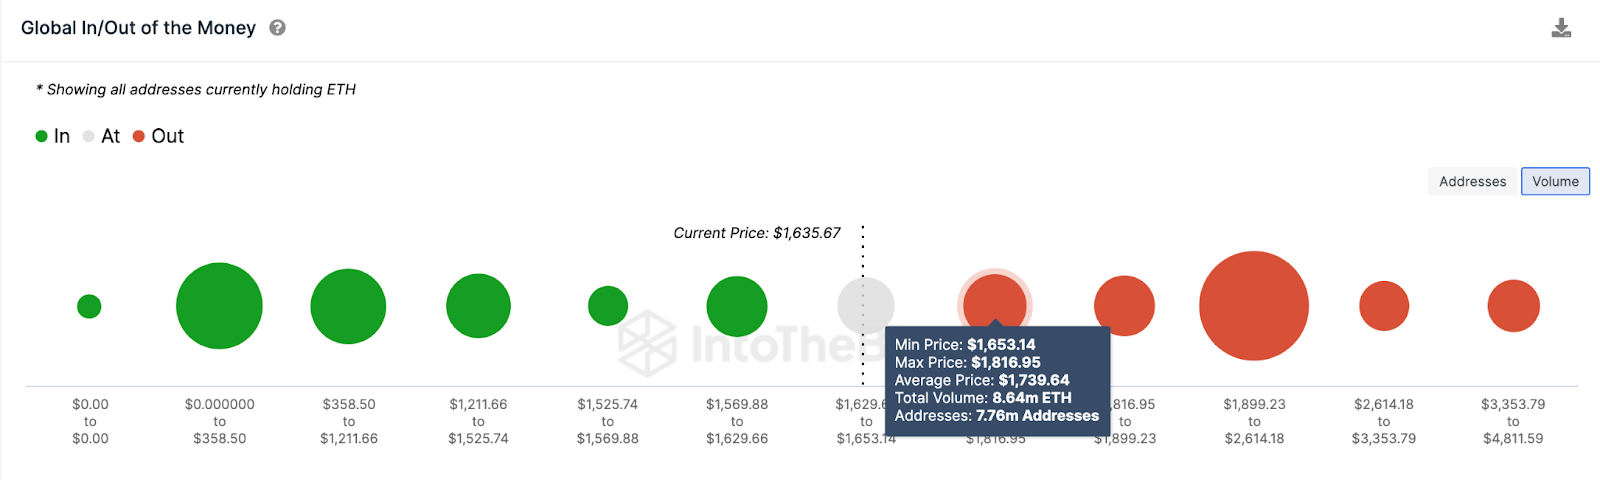 پیش بینی قیمت اتریوم (ETH) | مبادله کتاب سفارش | منبع: IntoTheBlock